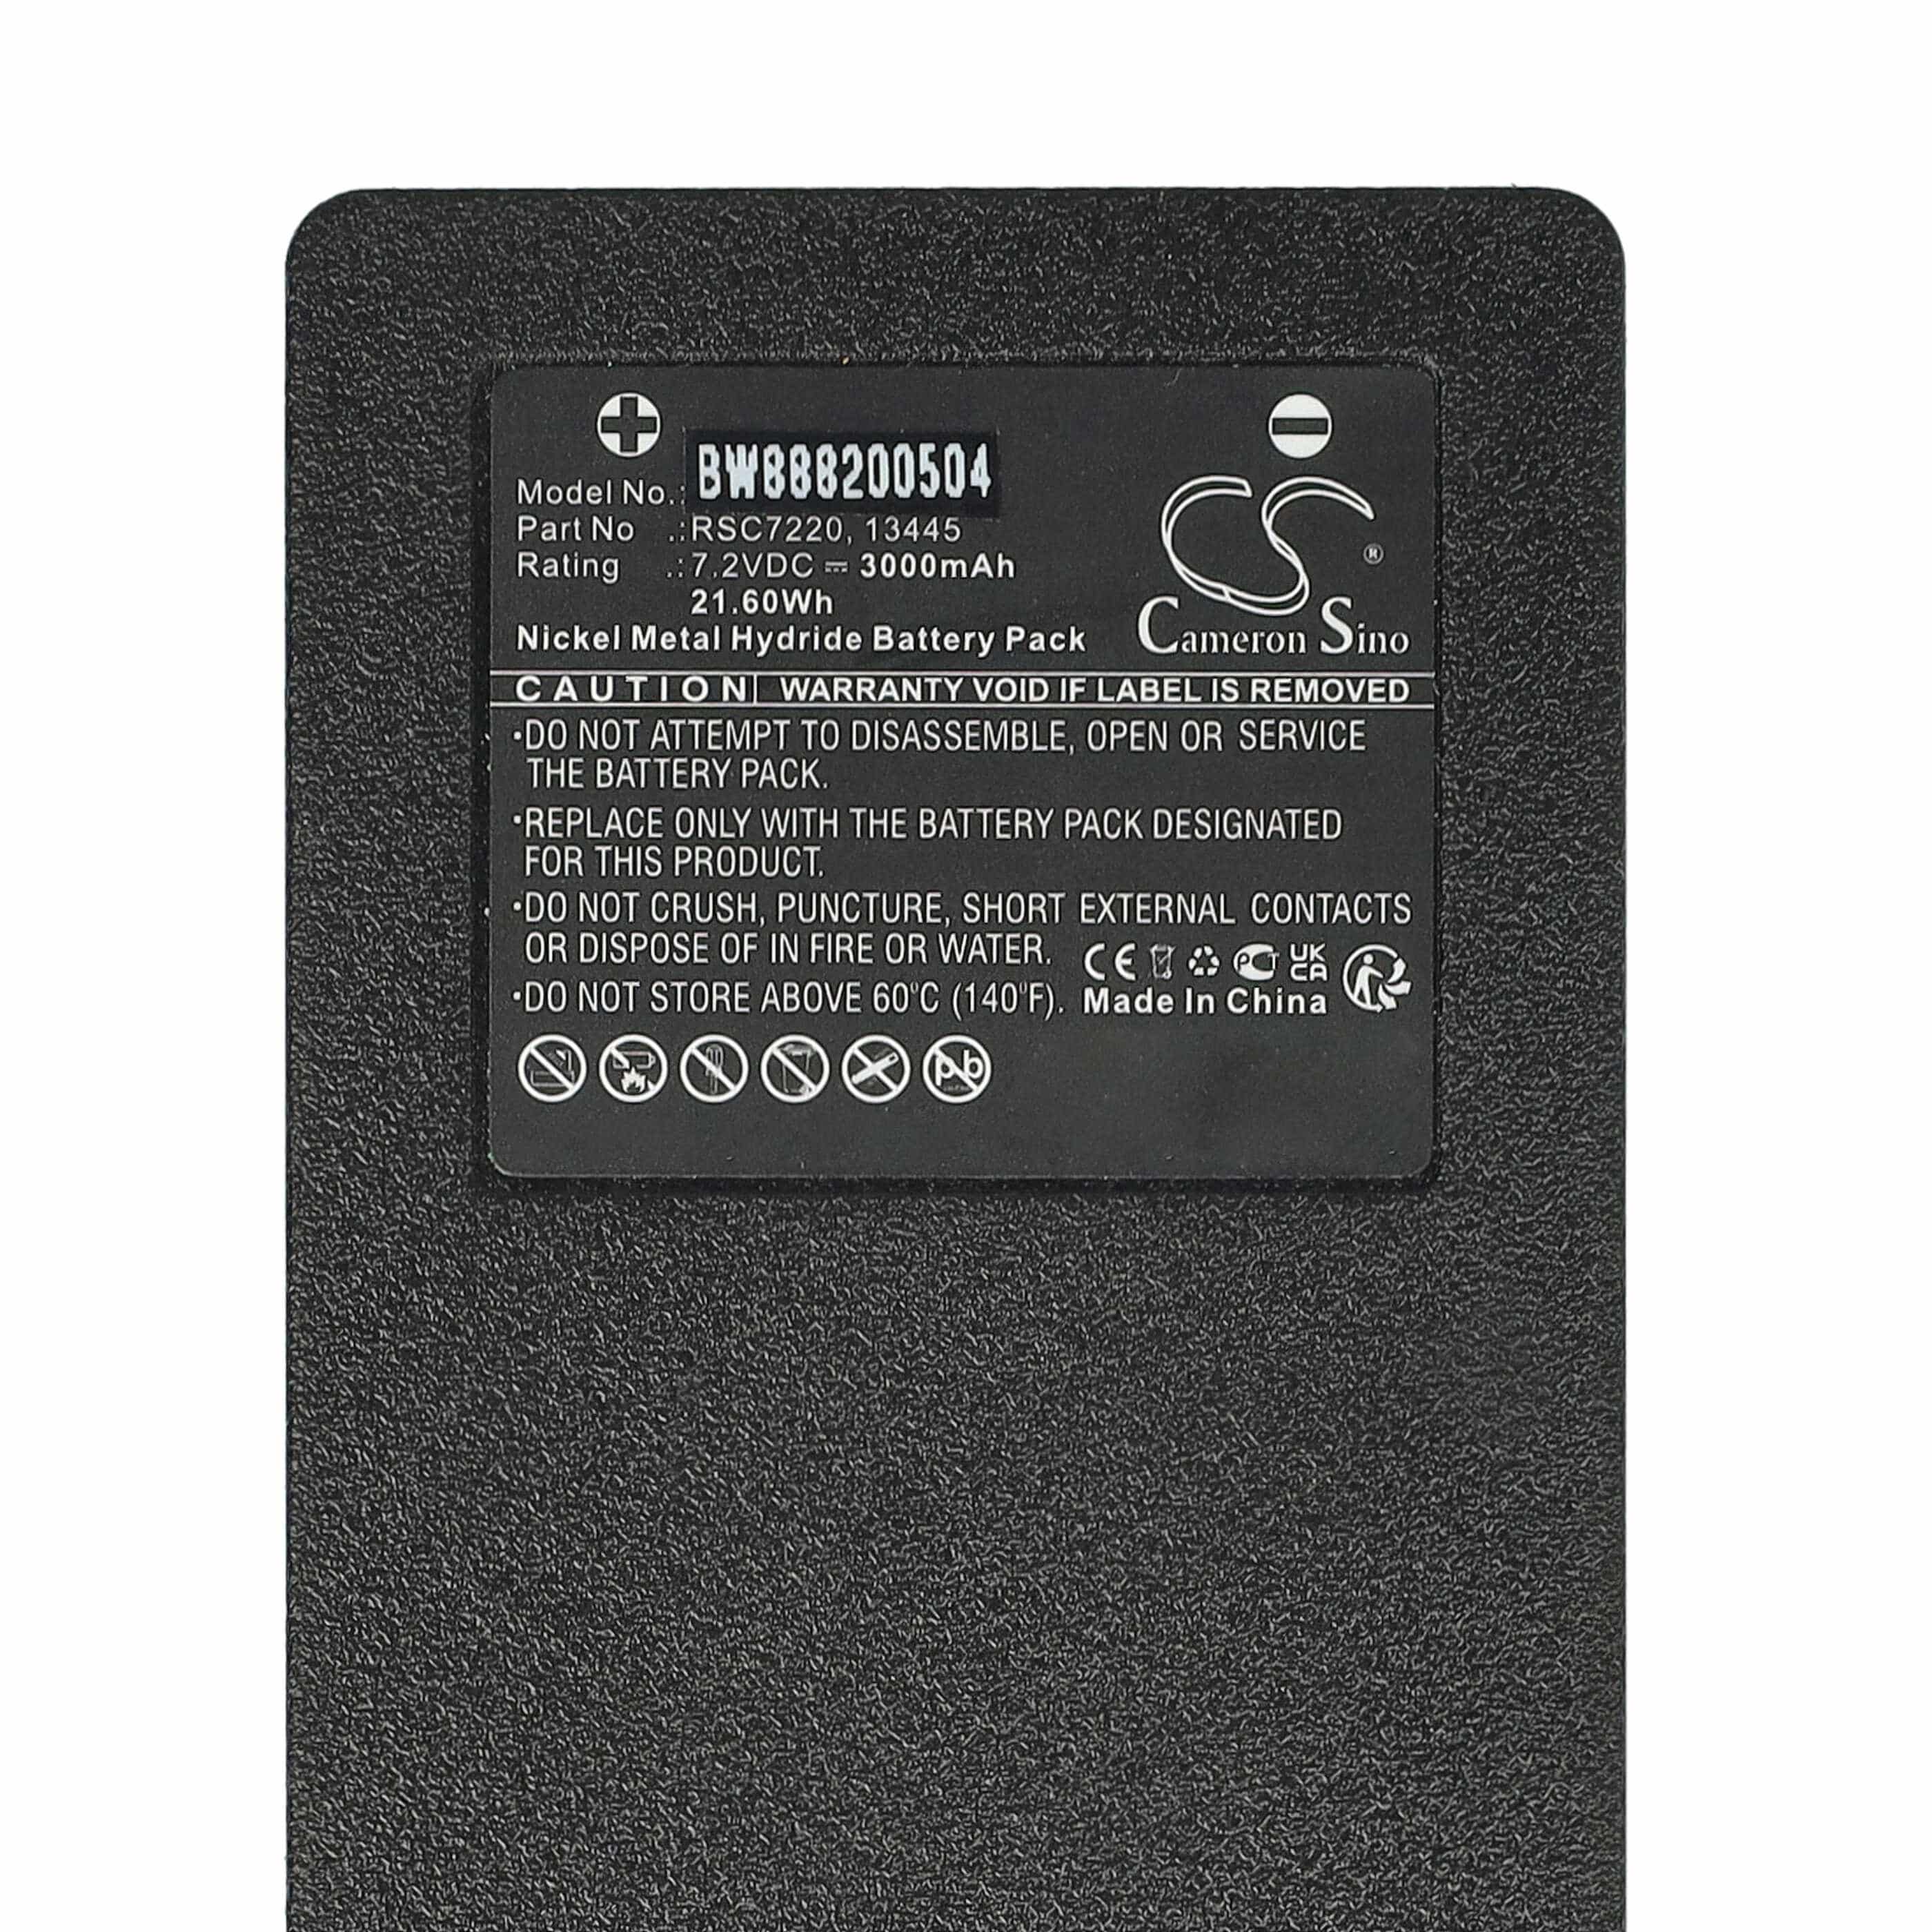 Batterie remplace Palfinger 17162, 16131, 1026, 13445 pour télécomande industrielle - 3000mAh 7,2V NiMH